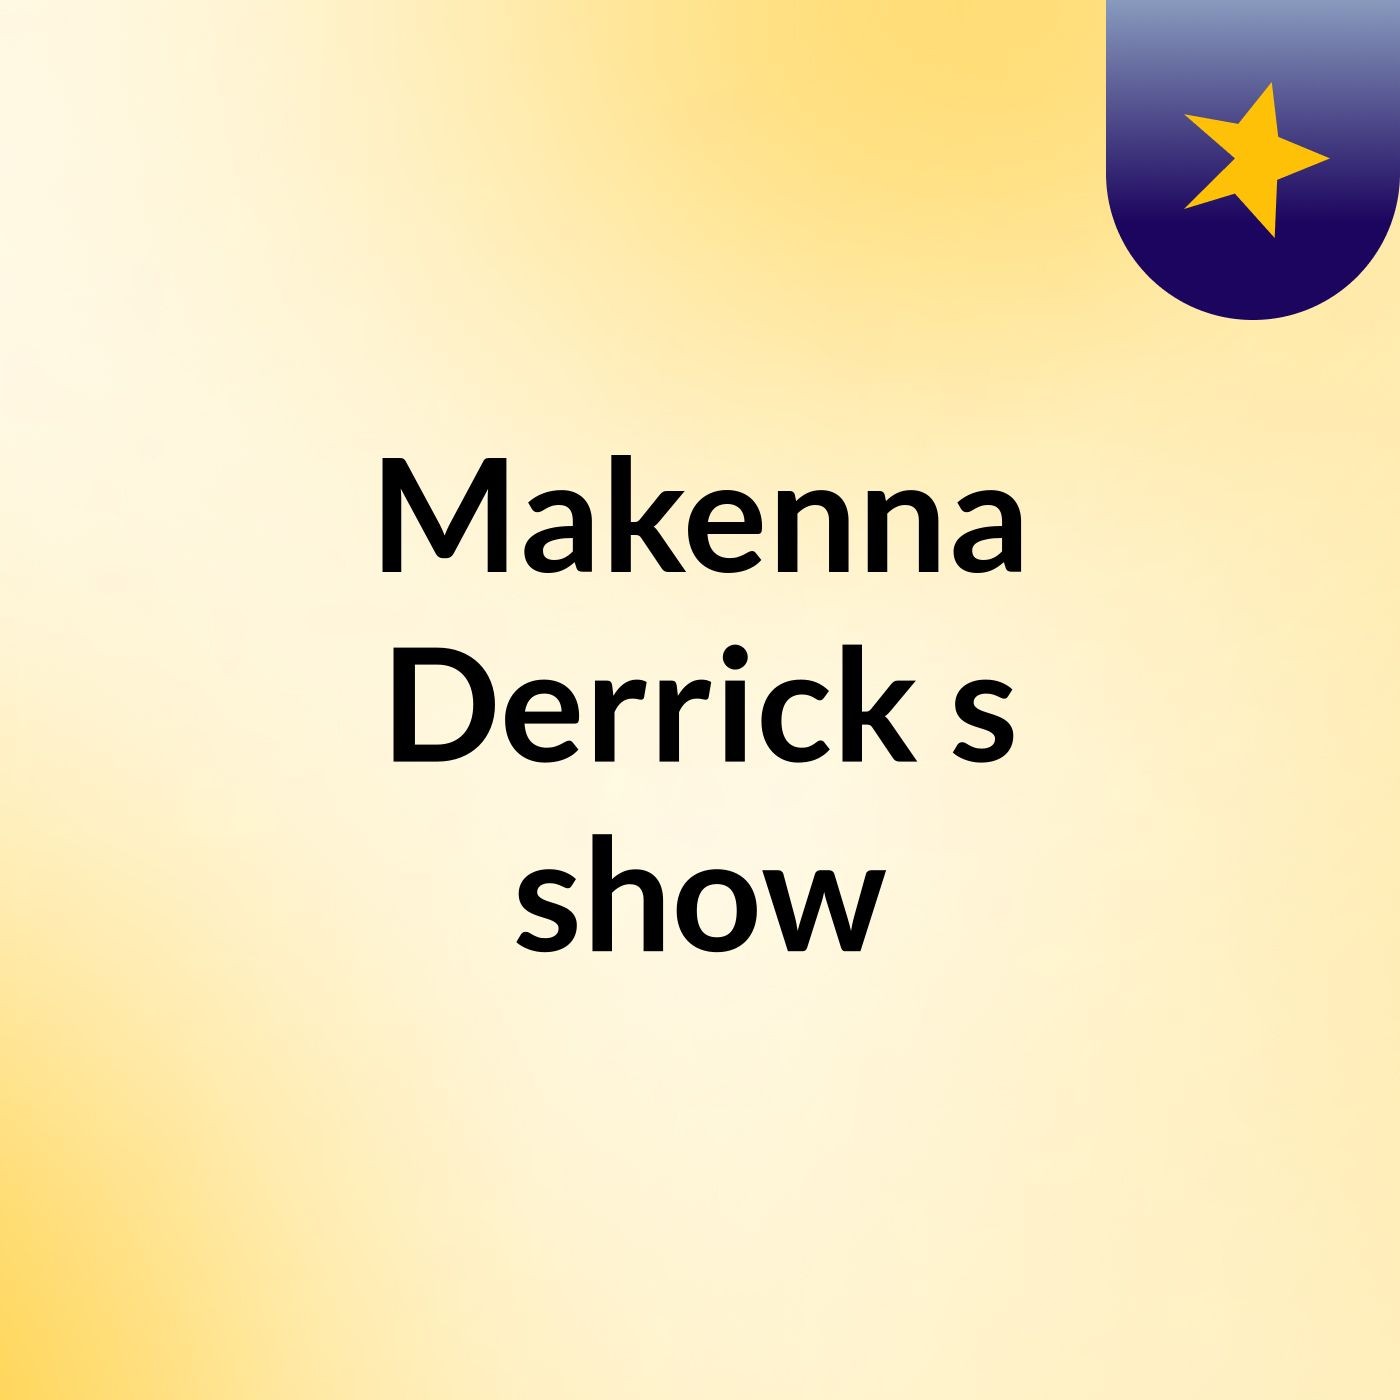 Episode 2 - Makenna Derrick's show